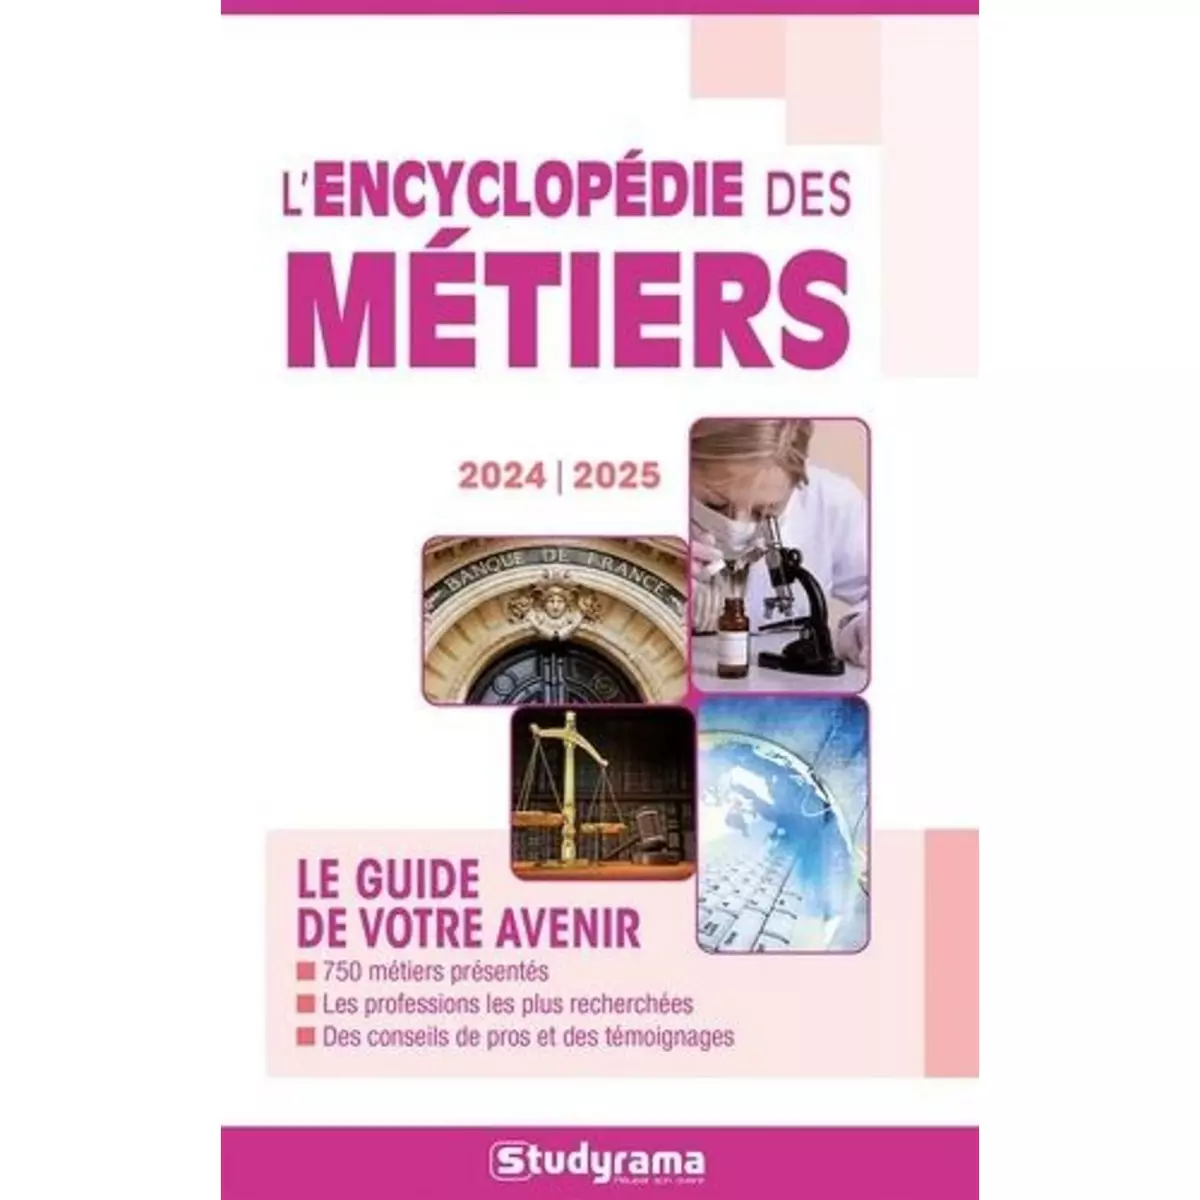  L'ENCYCLOPEDIE DES METIERS. EDITION 2024-2025, Studyrama